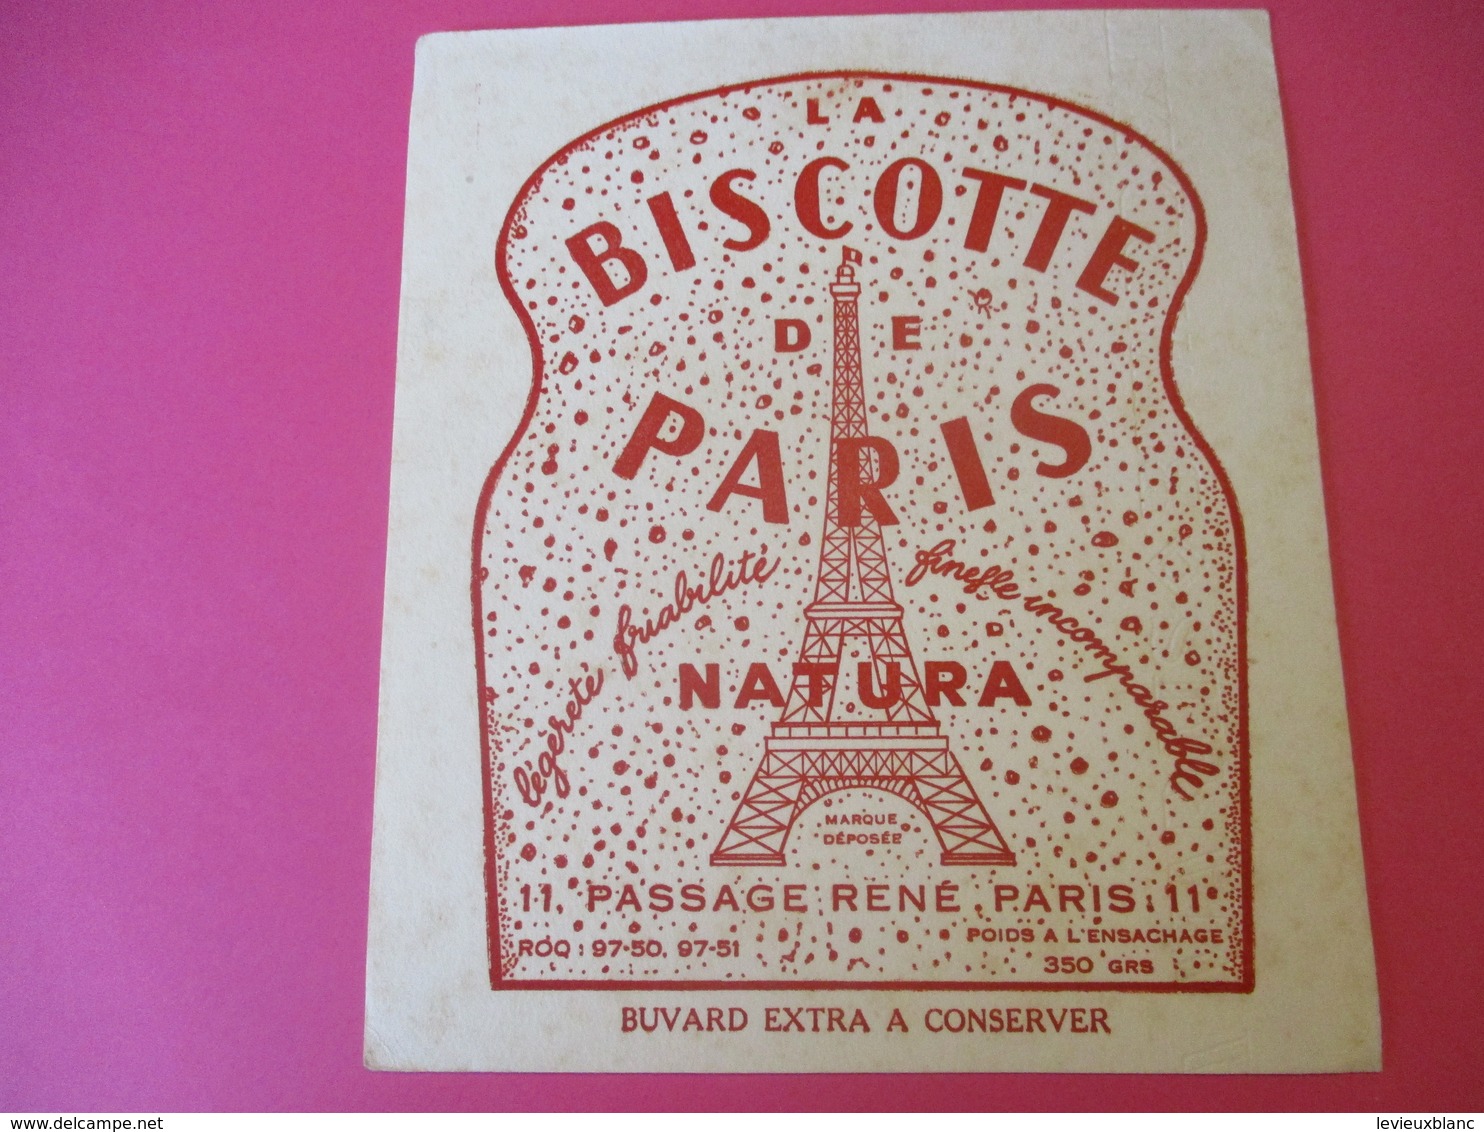 Buvard/La Biscotte De PARIS/NATURA/Légéreté Friabilité/Finesse Incomparable/Passage René/PARIS/Vers 1940-1960 BUV383 - Bizcochos